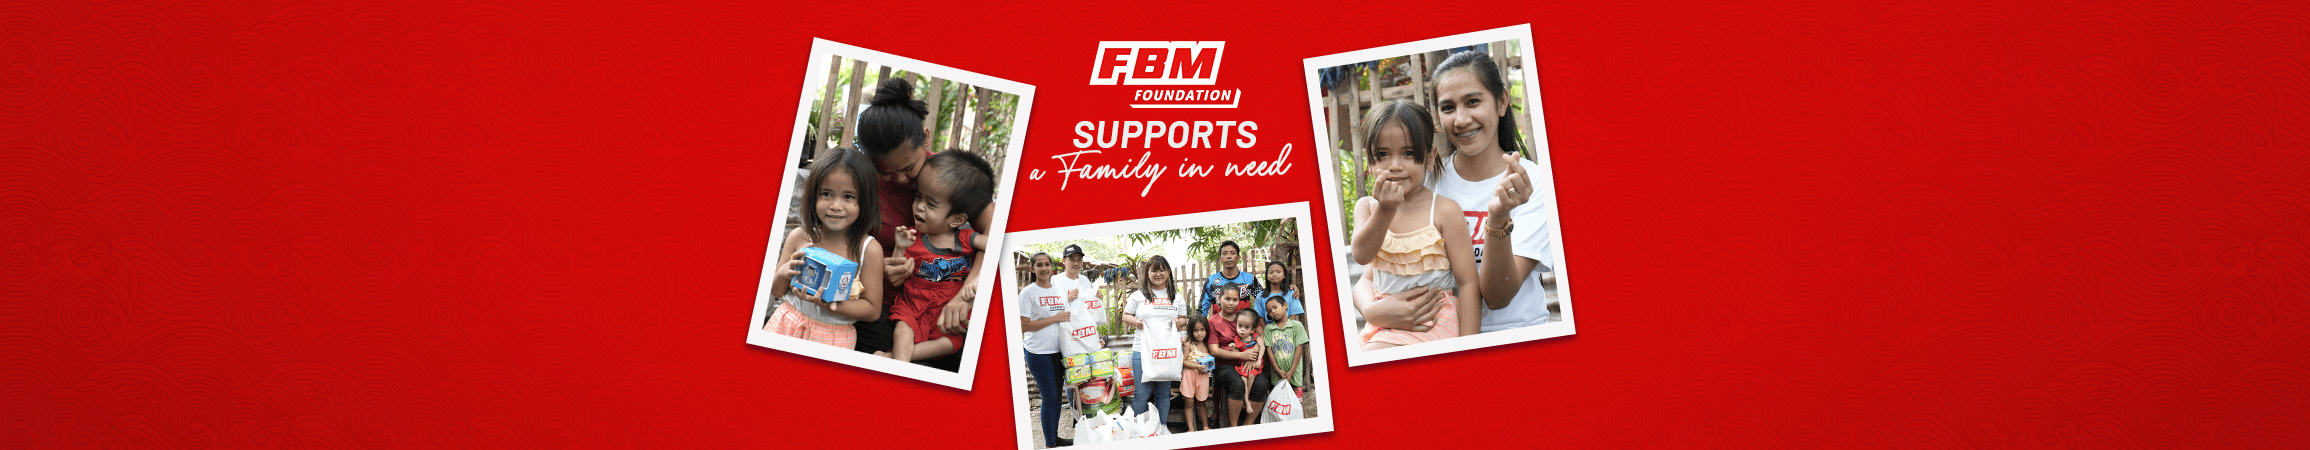 FBM Foundation: una historia de empatía y solidaridad con una familia necesitada en Batangas